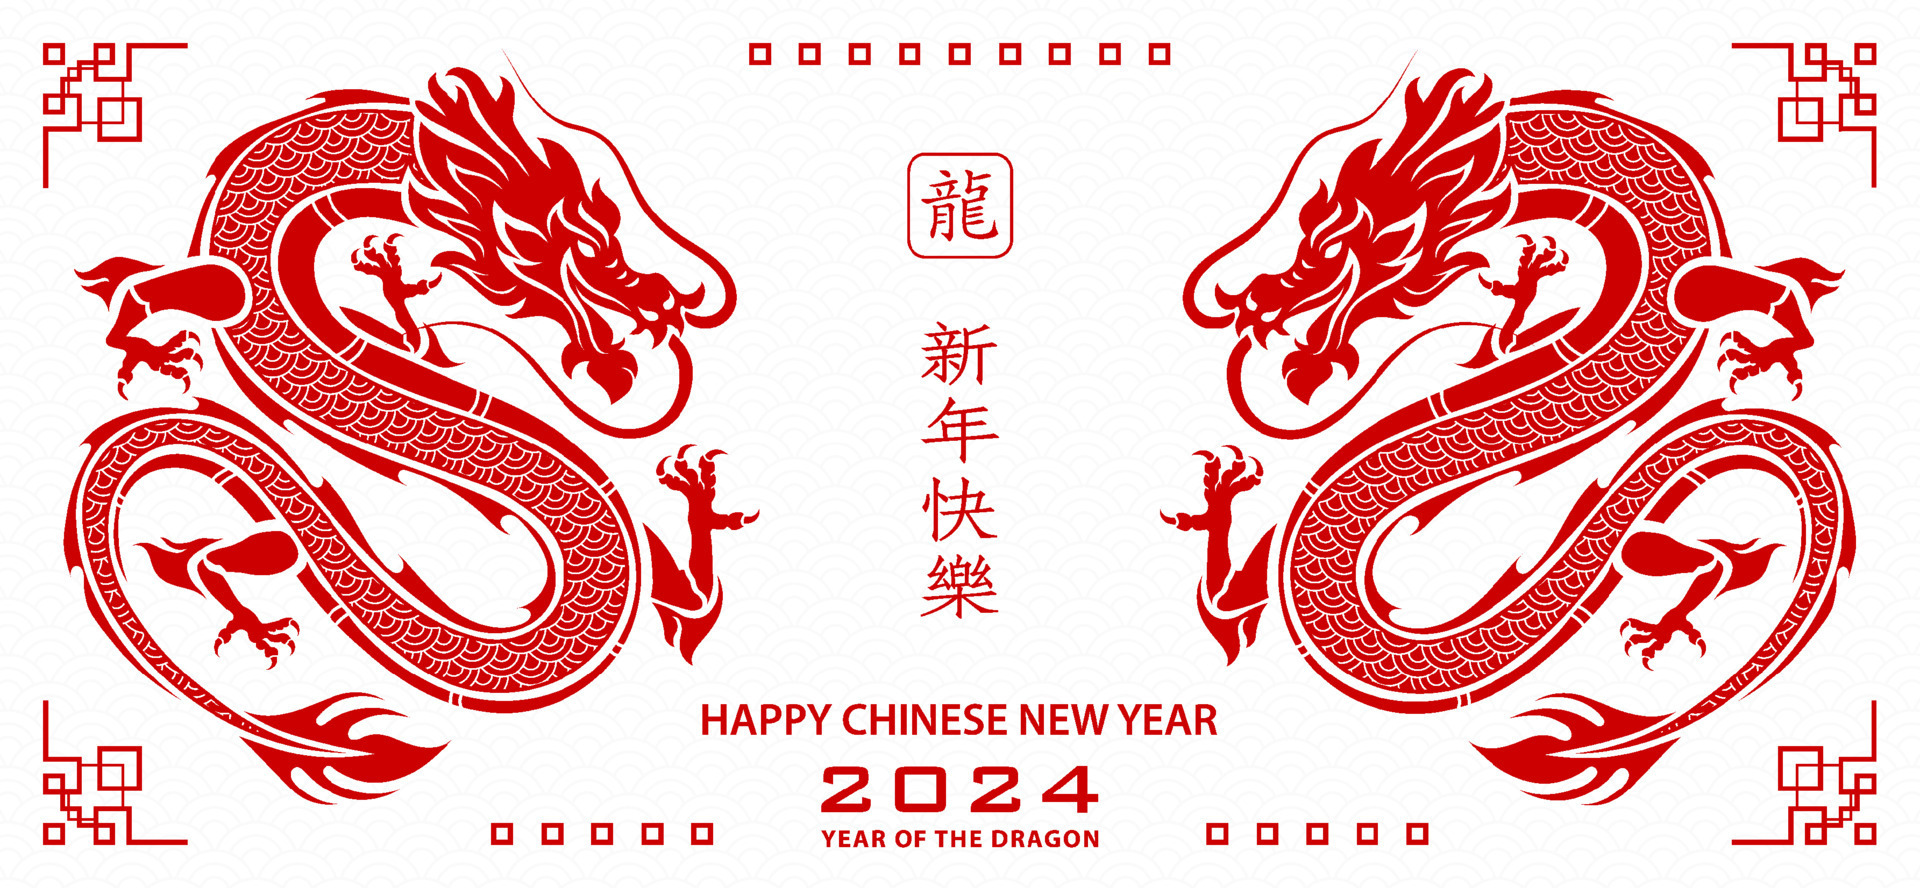 Стол года дракона 2024. Китайский год дракона 2024. Китайский новый год дракона 2024. Символ года дракон. Китайский новый дракон 2024.